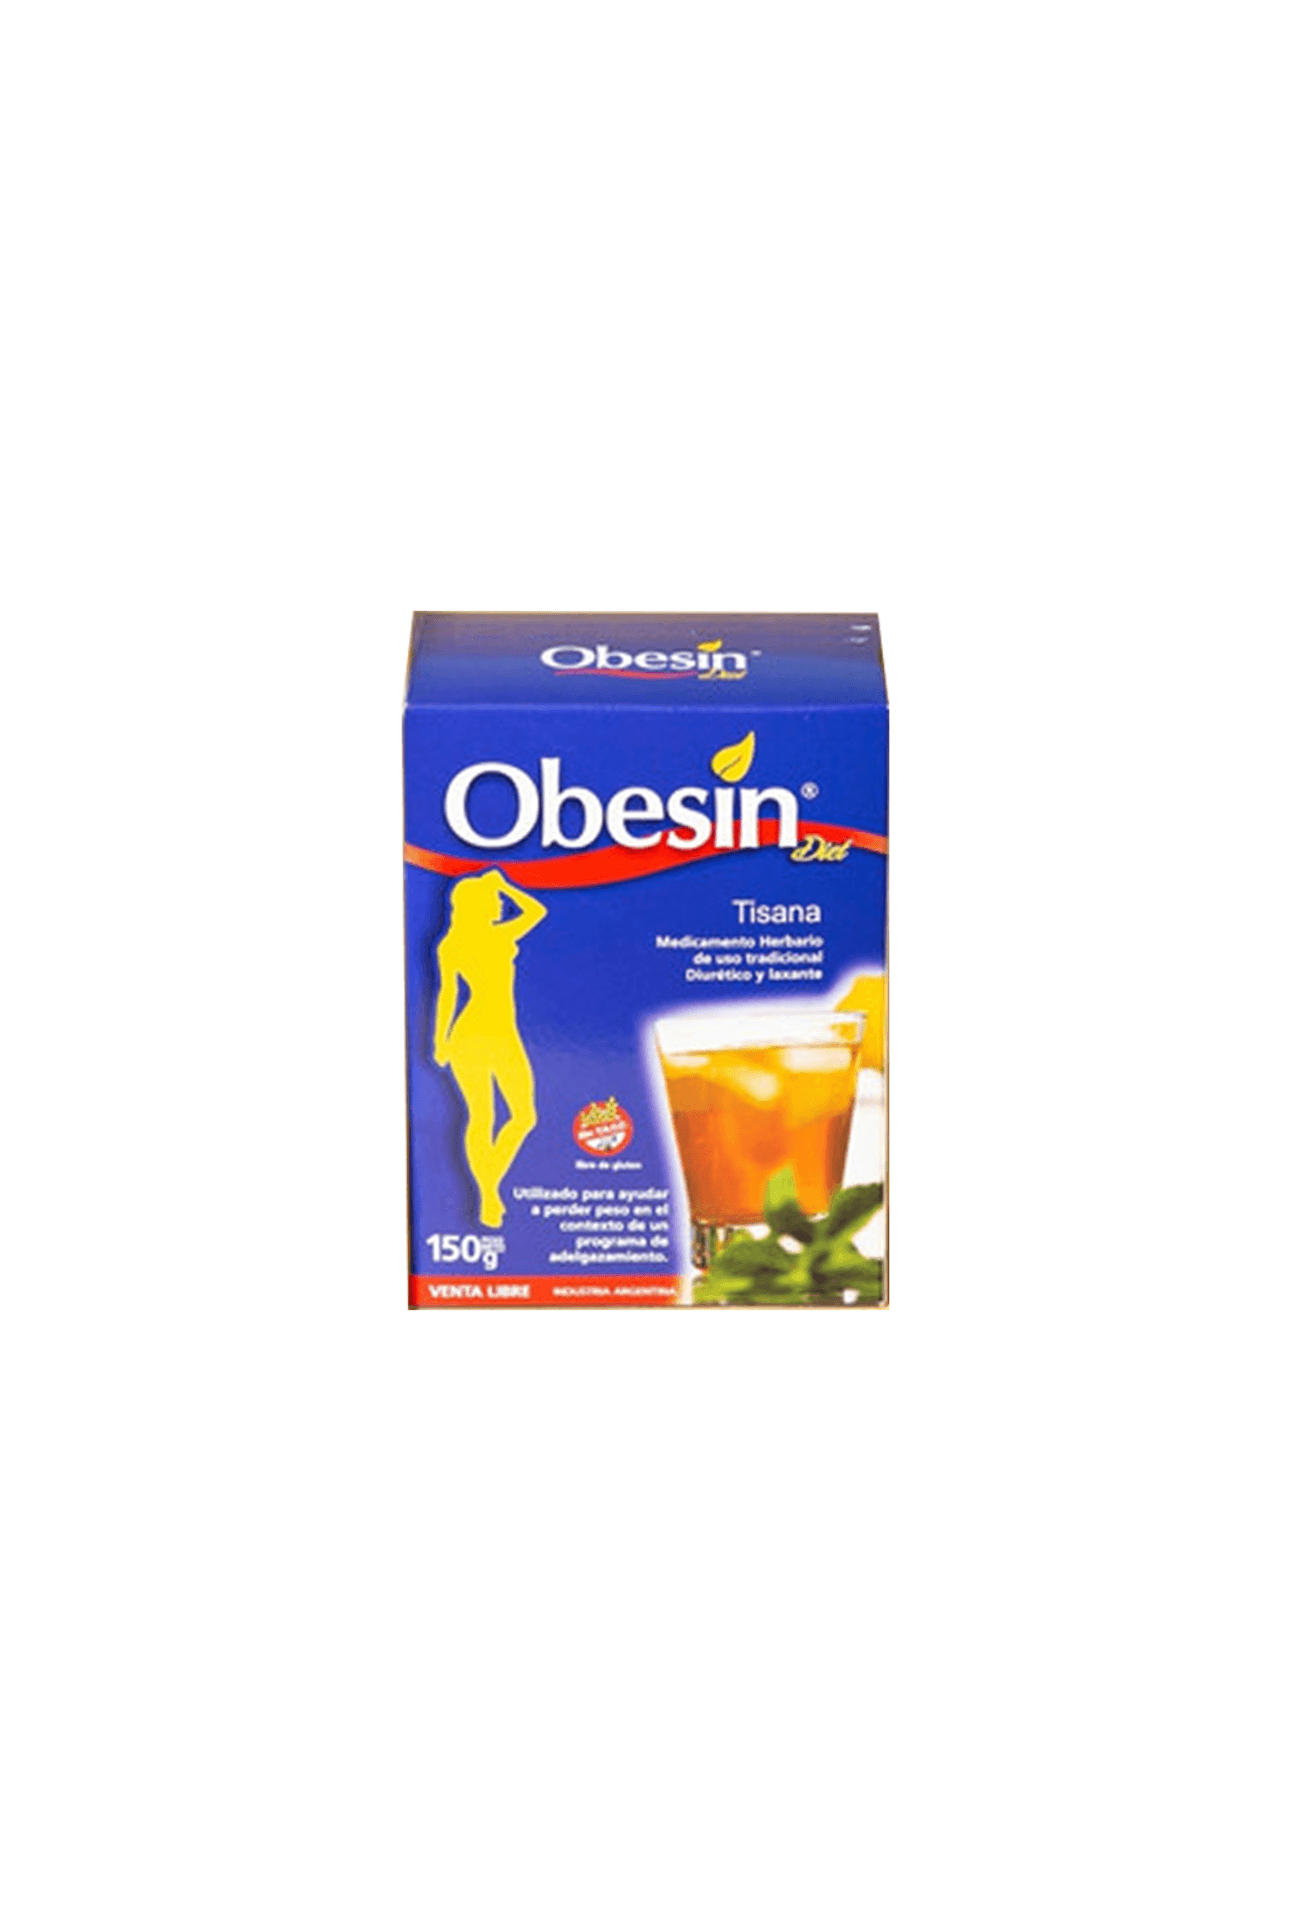 2096179_Obesin-Obesin-te-x-150gr_img1